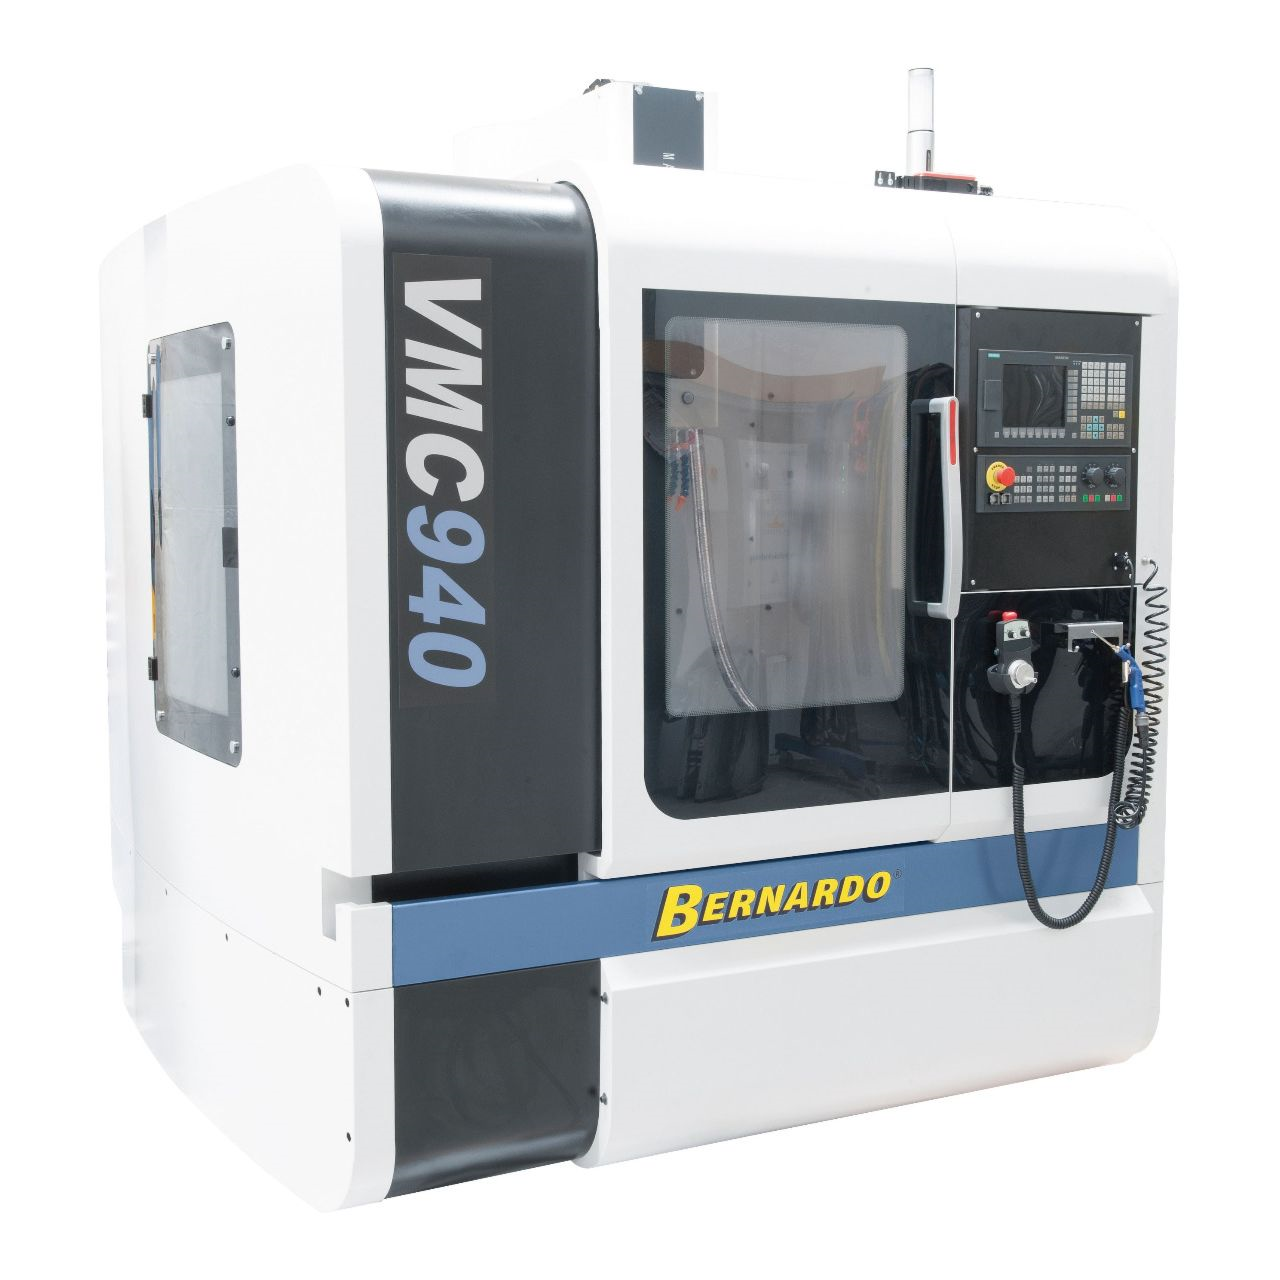 CNC-Vertikalbearbeitungszentrum VMC 940 - Siemens Sinumerik 808D Advanced 16